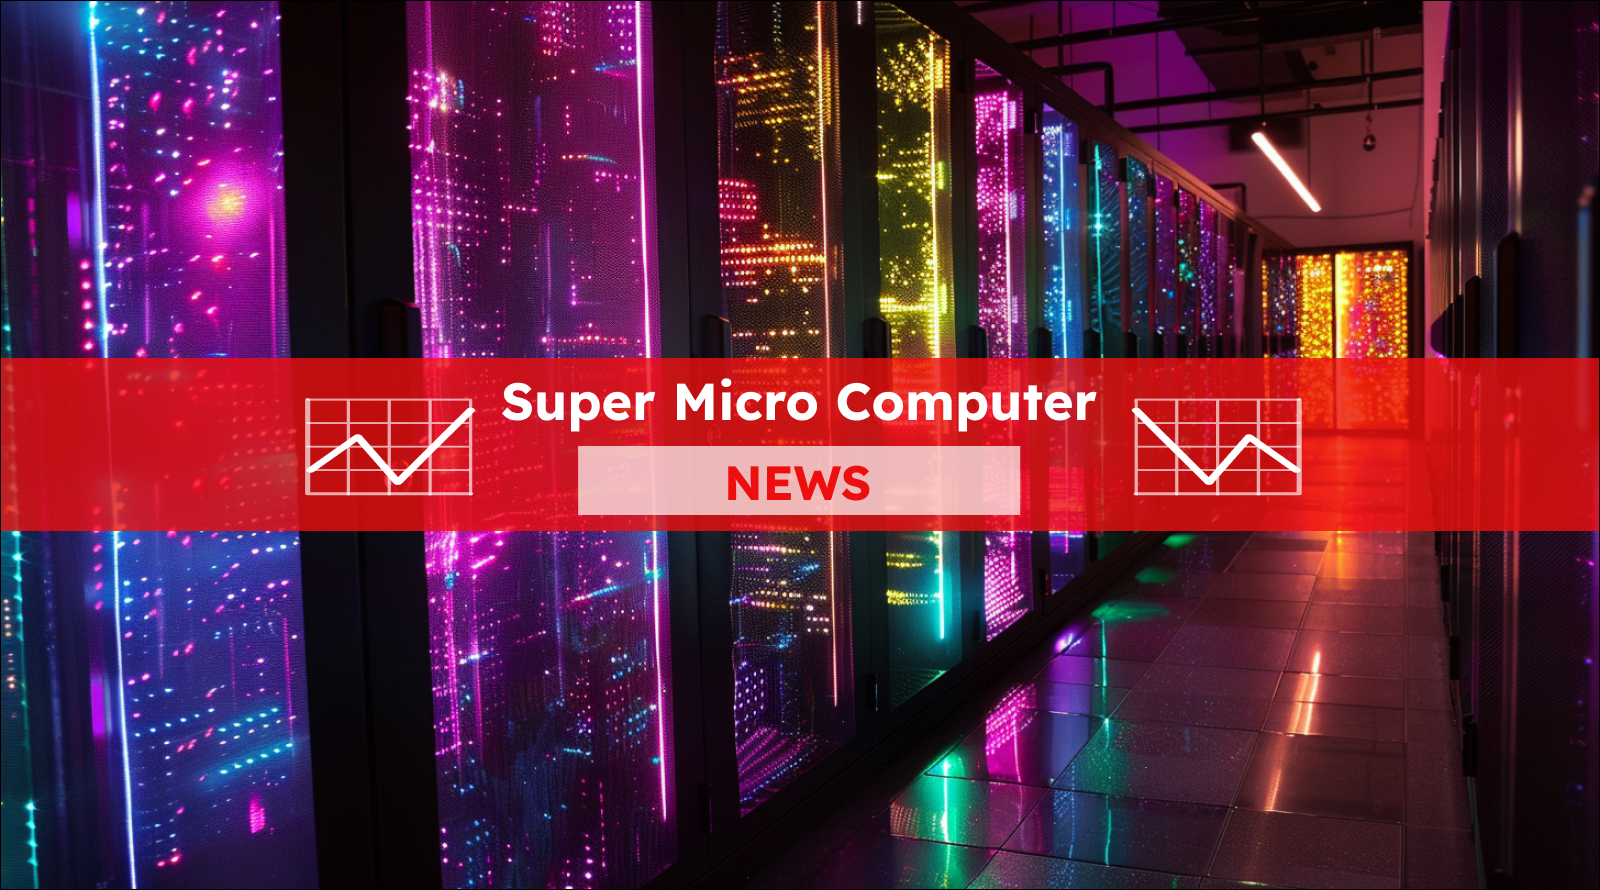 Ein leuchtender Serverraum mit einem Super Micro Computer NEWS Banner